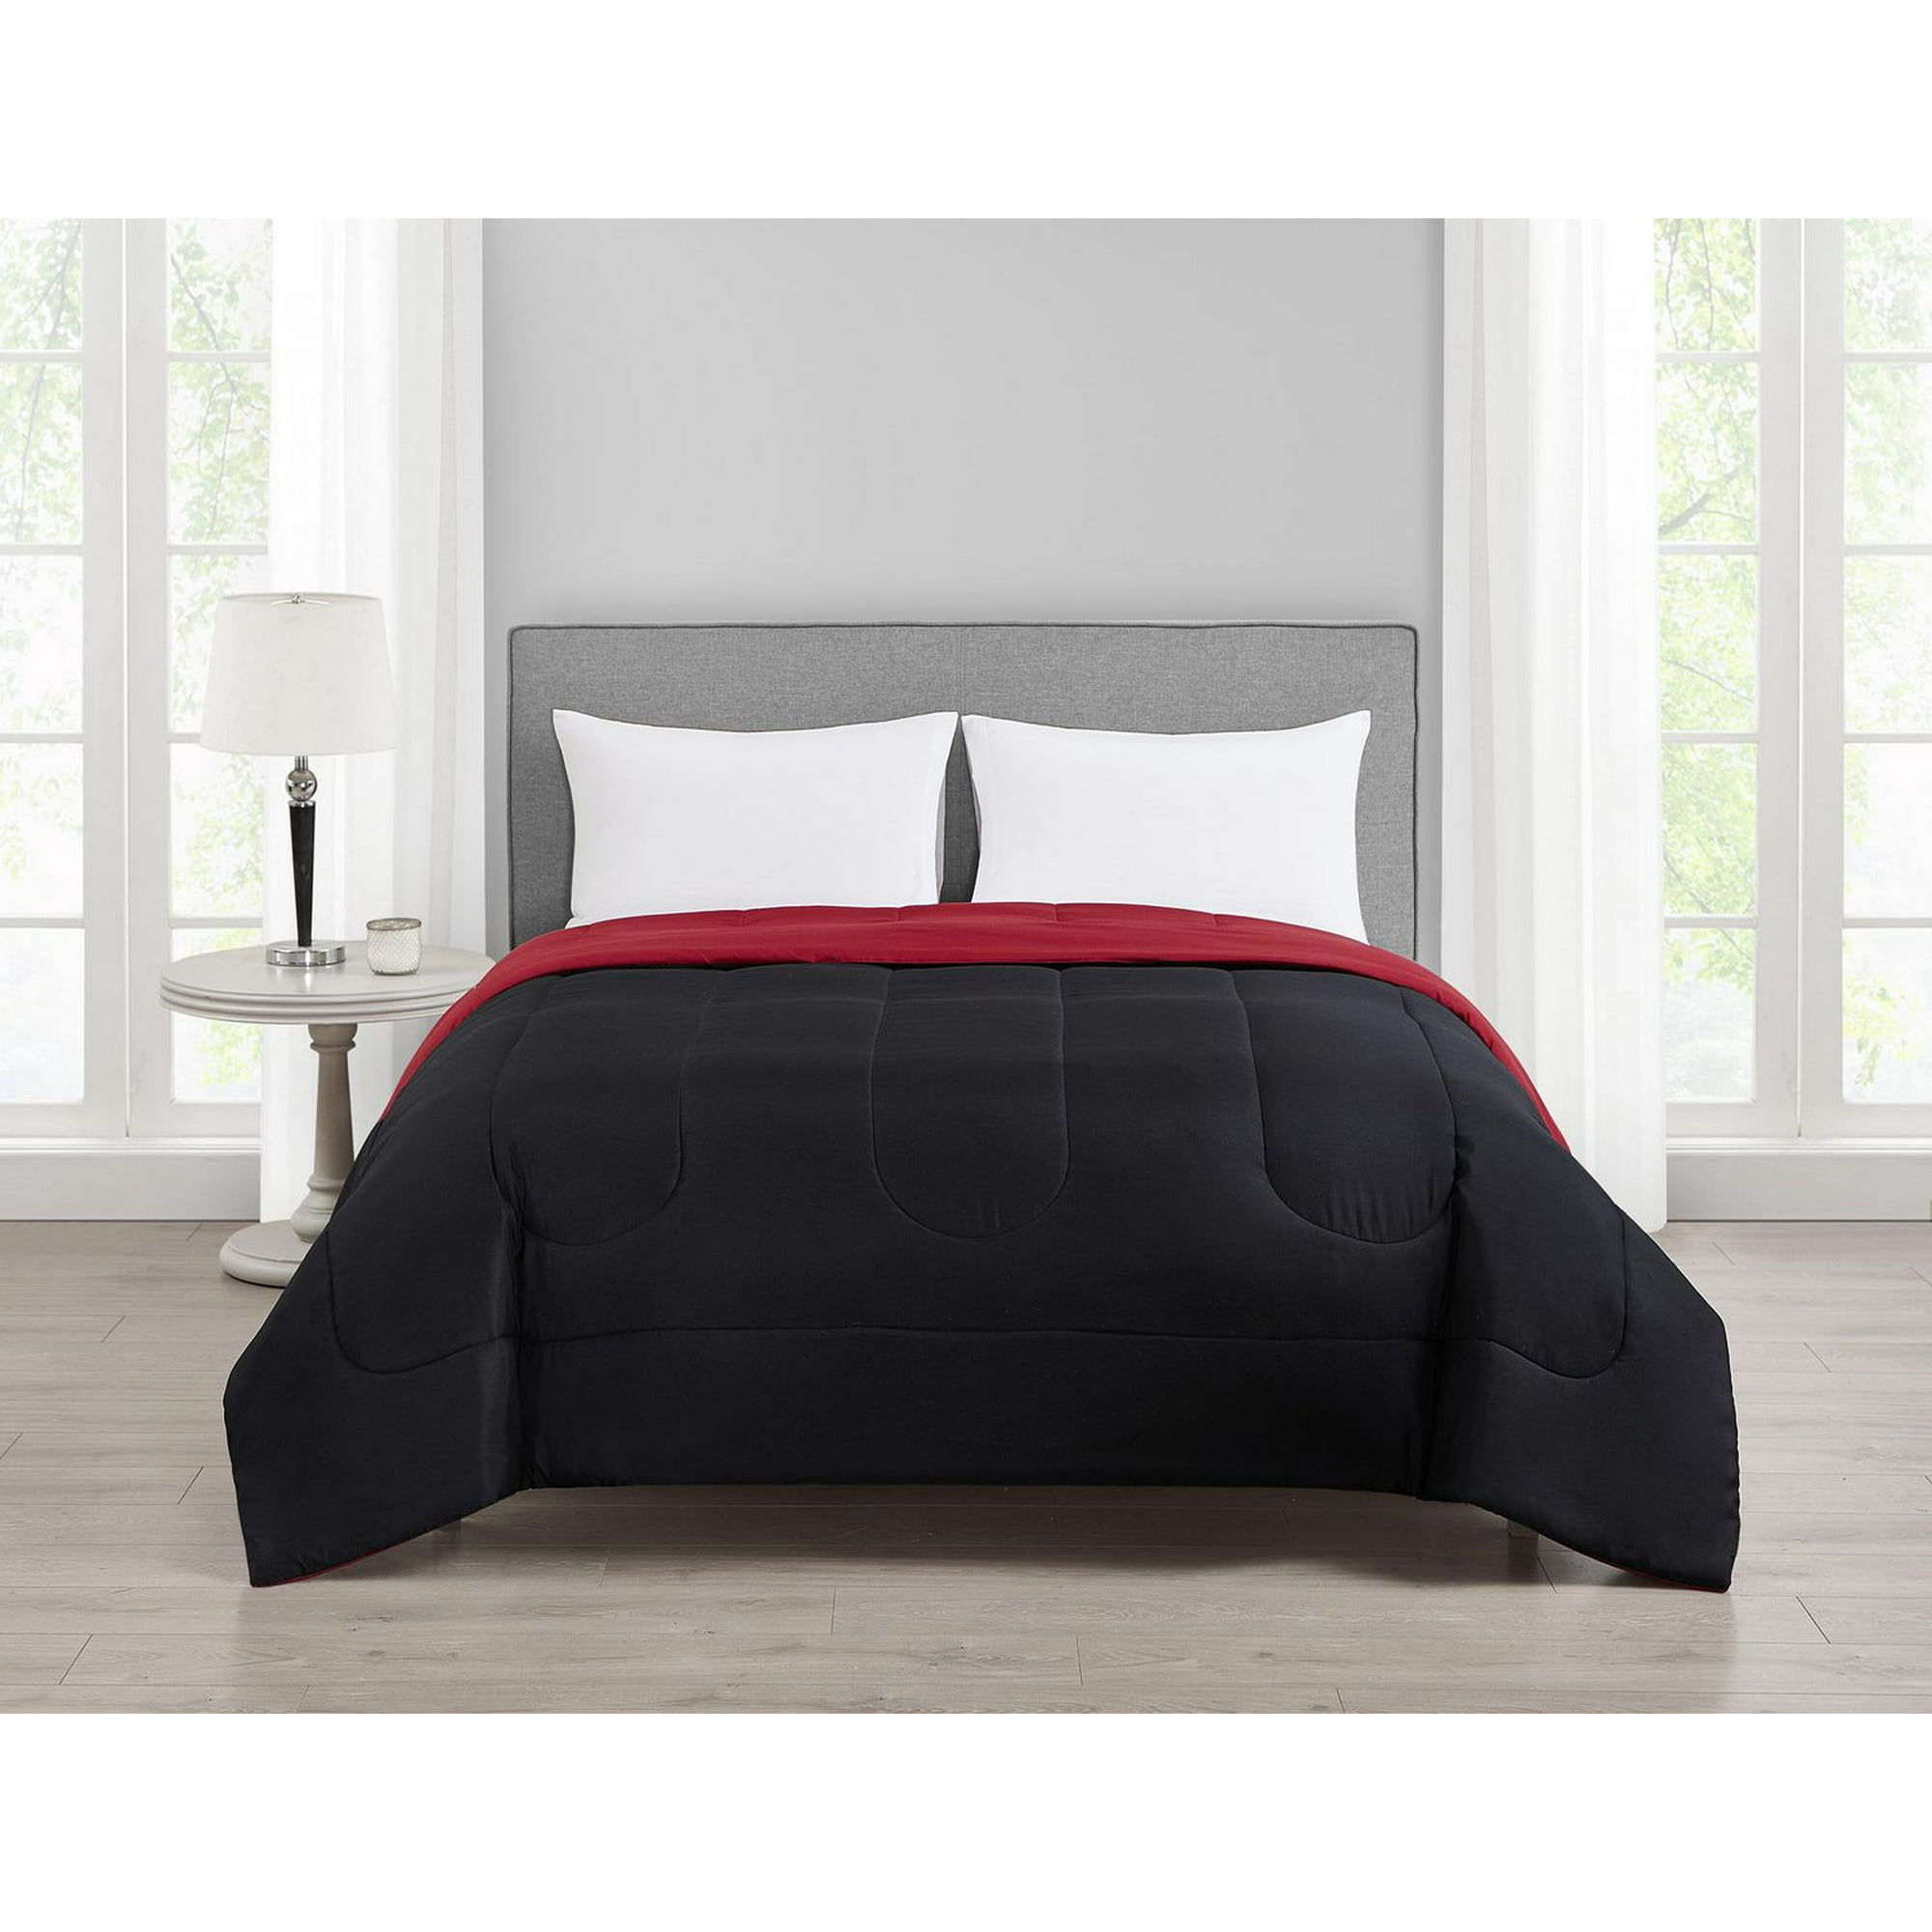 Mainstays Black Reversible Comforter Double/Queen, comforter 